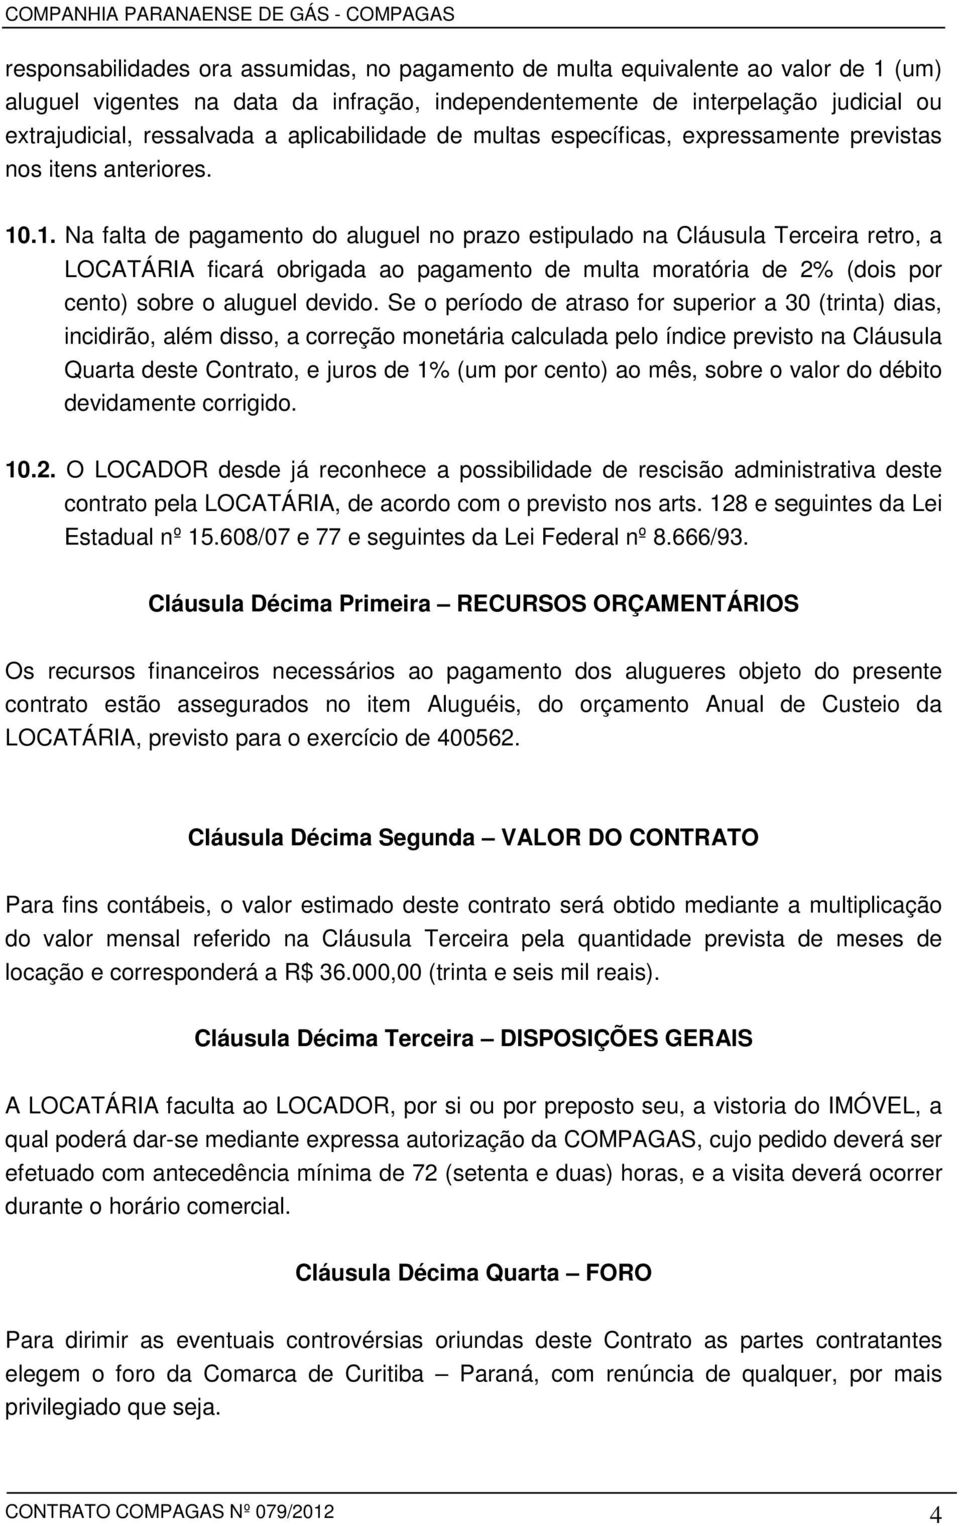 .1. Na falta de pagamento do aluguel no prazo estipulado na Cláusula Terceira retro, a LOCATÁRIA ficará obrigada ao pagamento de multa moratória de 2% (dois por cento) sobre o aluguel devido.